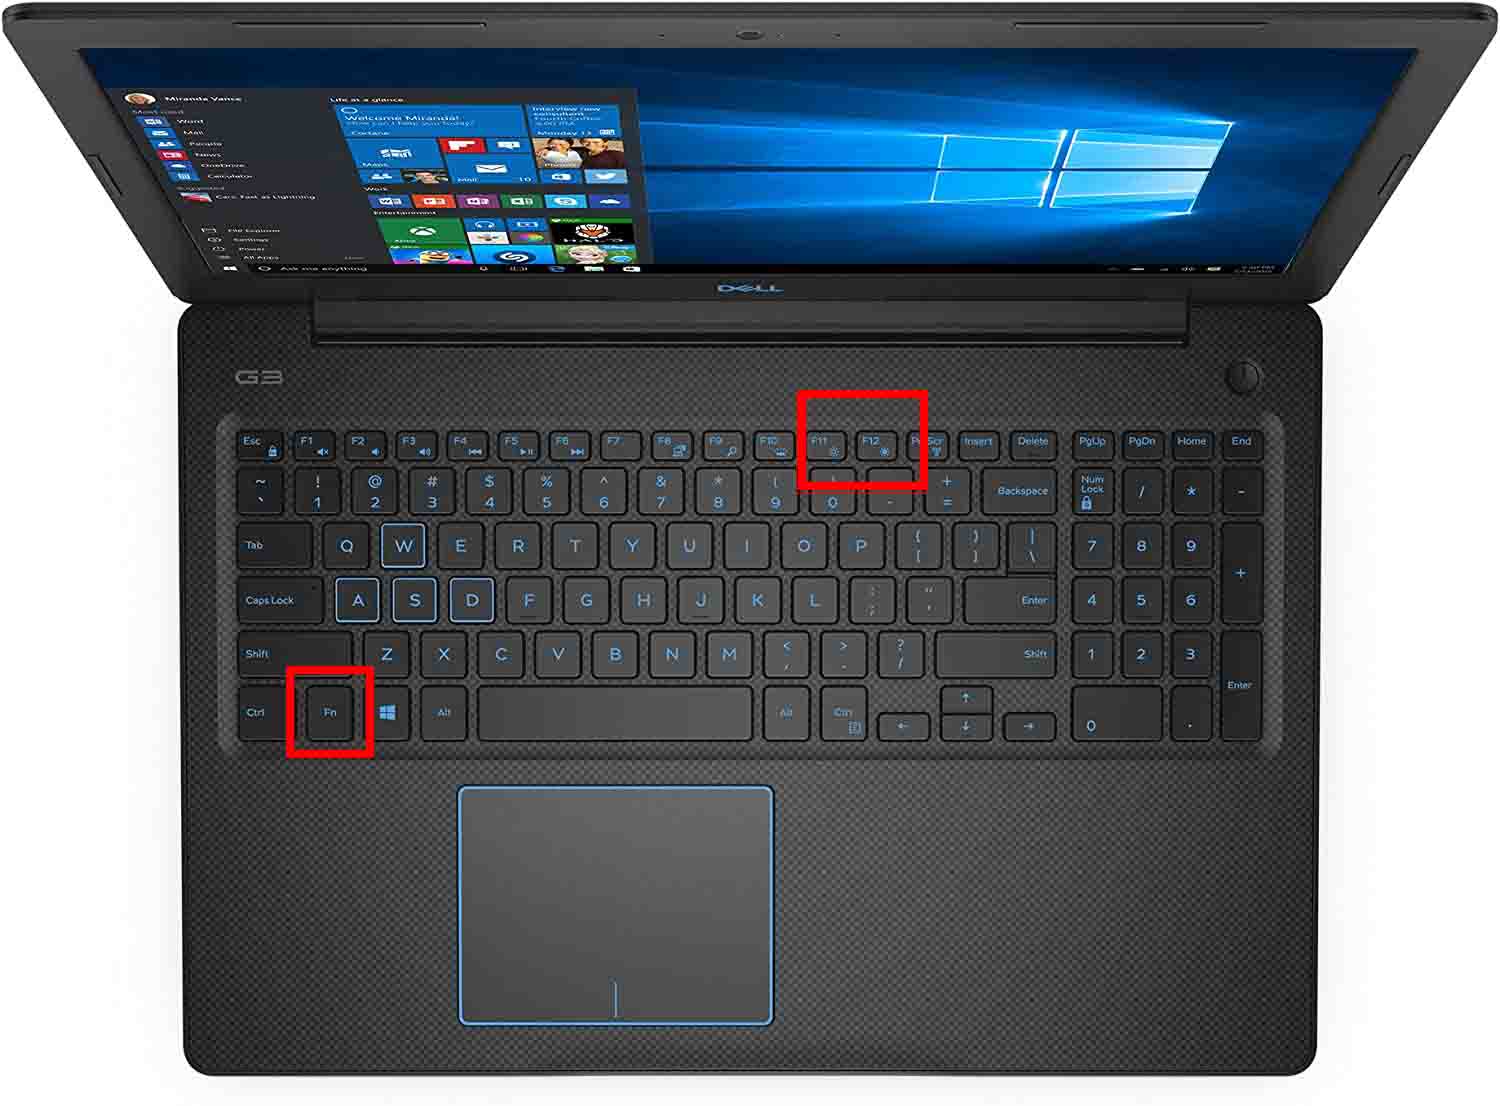 Chỉnh độ sáng màn hình Dell G3 3579 với phím tắt